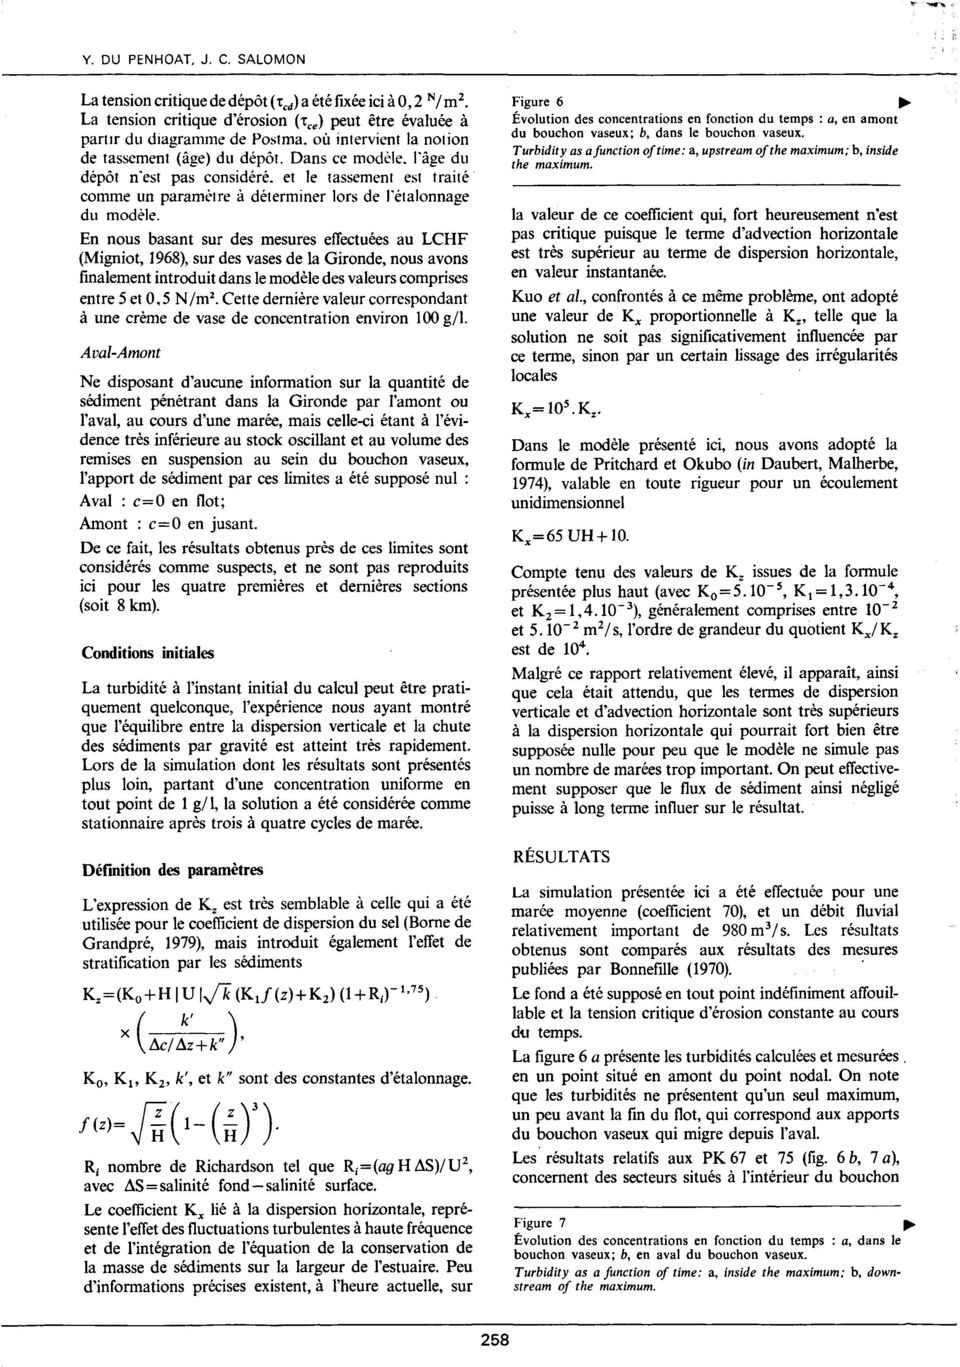 En nous basant sur des mesures effectuées au LCHF (Migniot, 1968), sur des vases de la Gironde, nous avons finalement introduit dans le modèle des valeurs comprises entre 5 et 0.